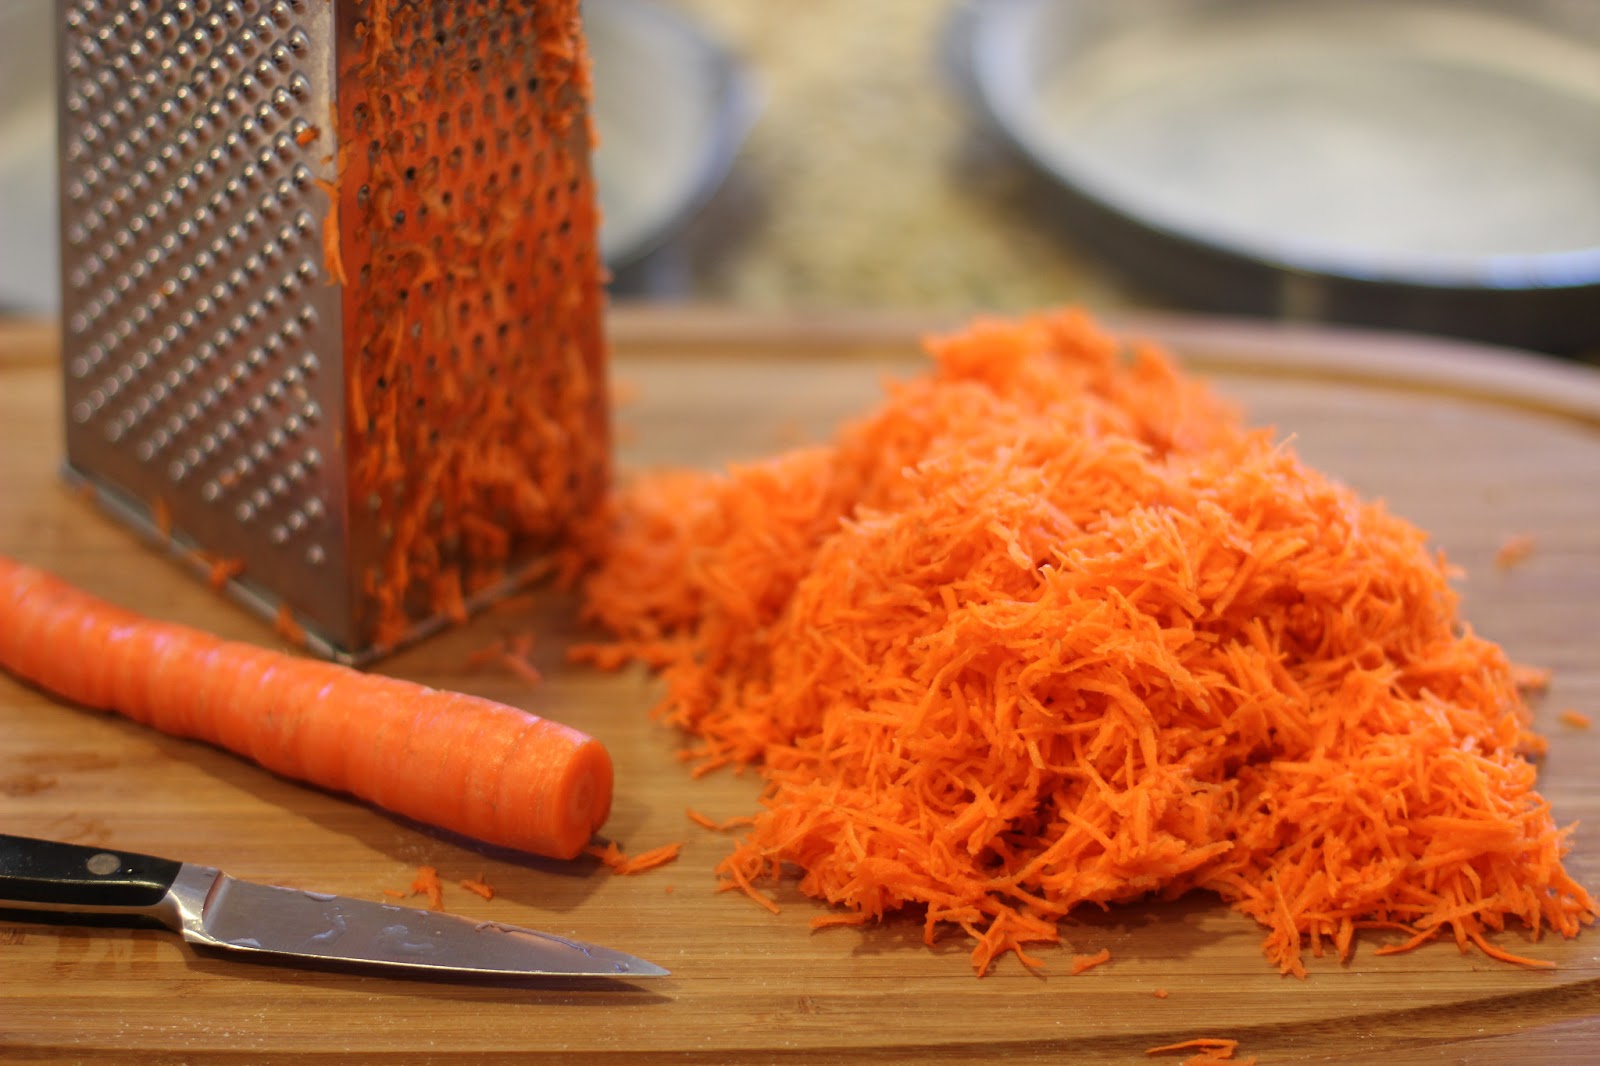 Натрем морковь на терке. Смешаем ее в кастрюле вместе с рисом, измельченным чесноком и пряностями. Варить рис, как обычно, почти до готовности, в конце добавить 2 столовые ложки соевого соуса.
